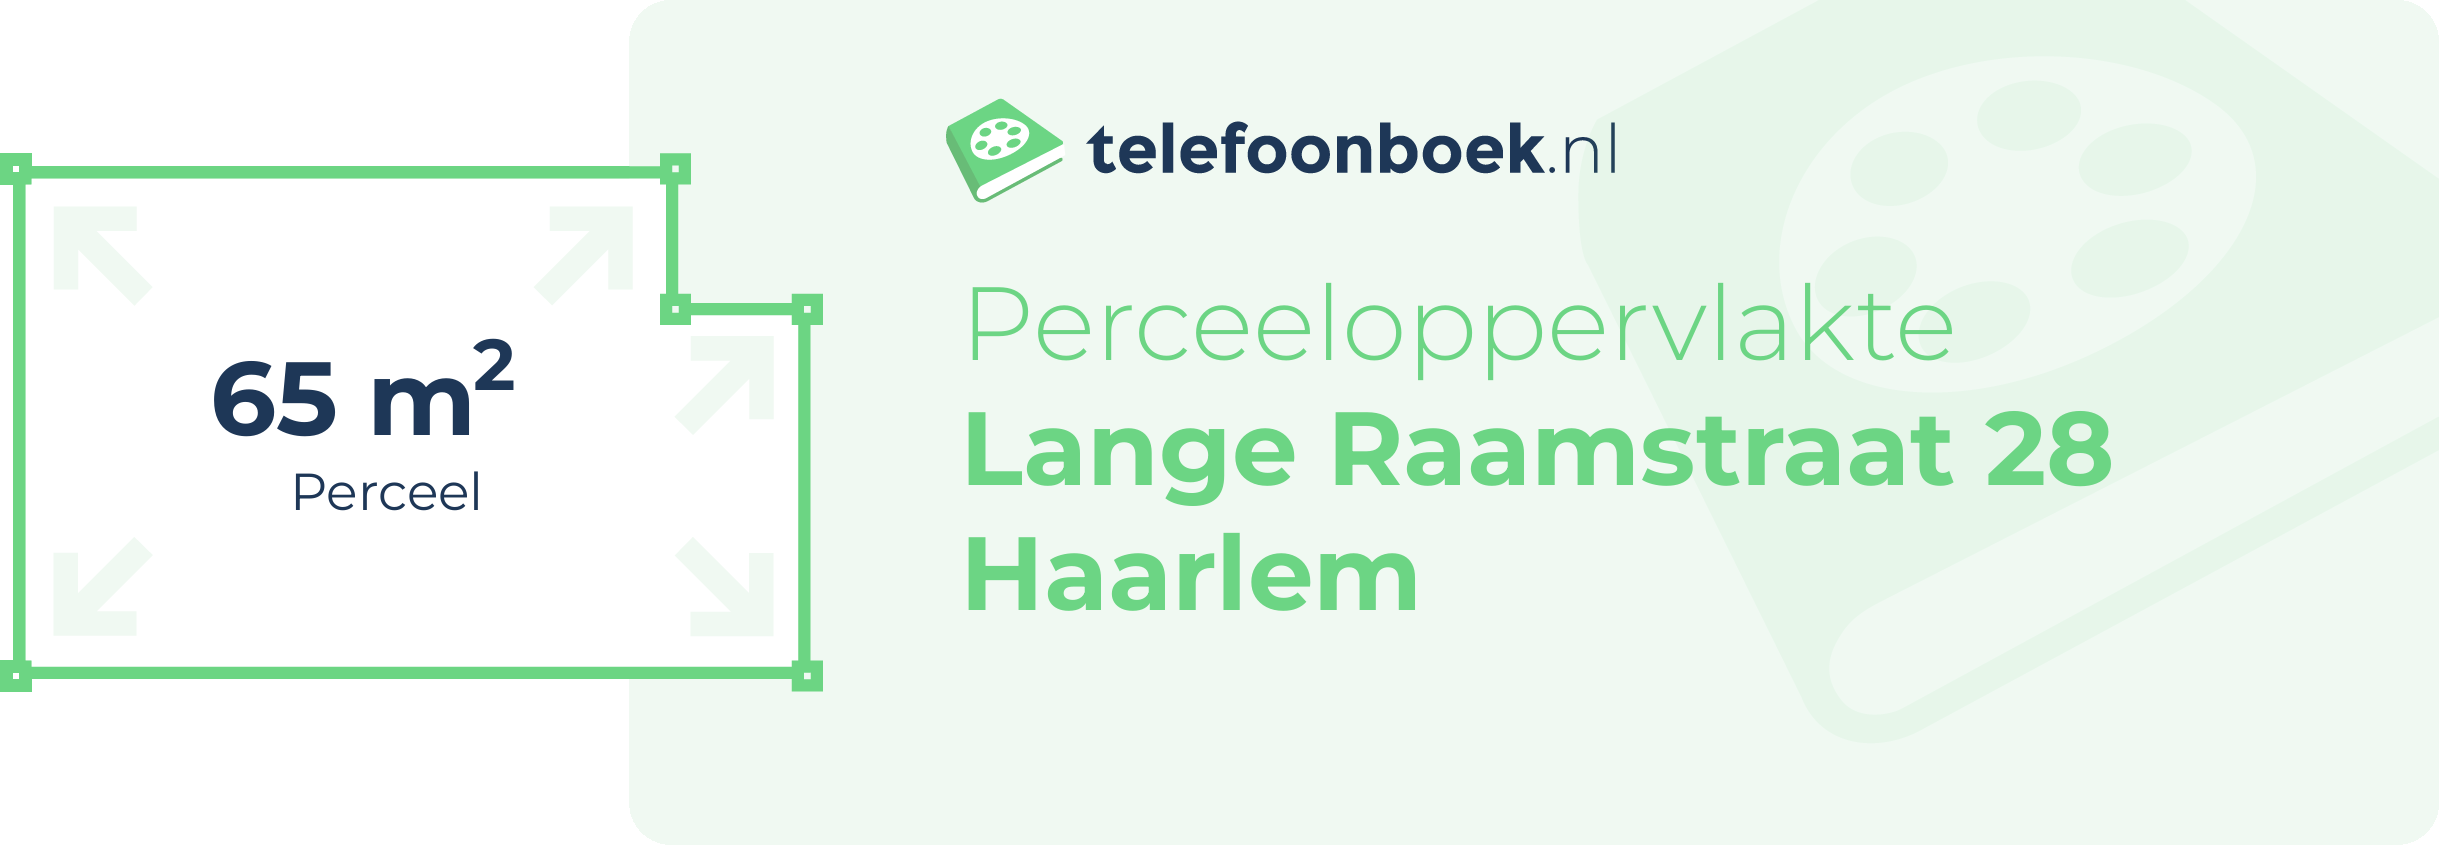 Perceeloppervlakte Lange Raamstraat 28 Haarlem